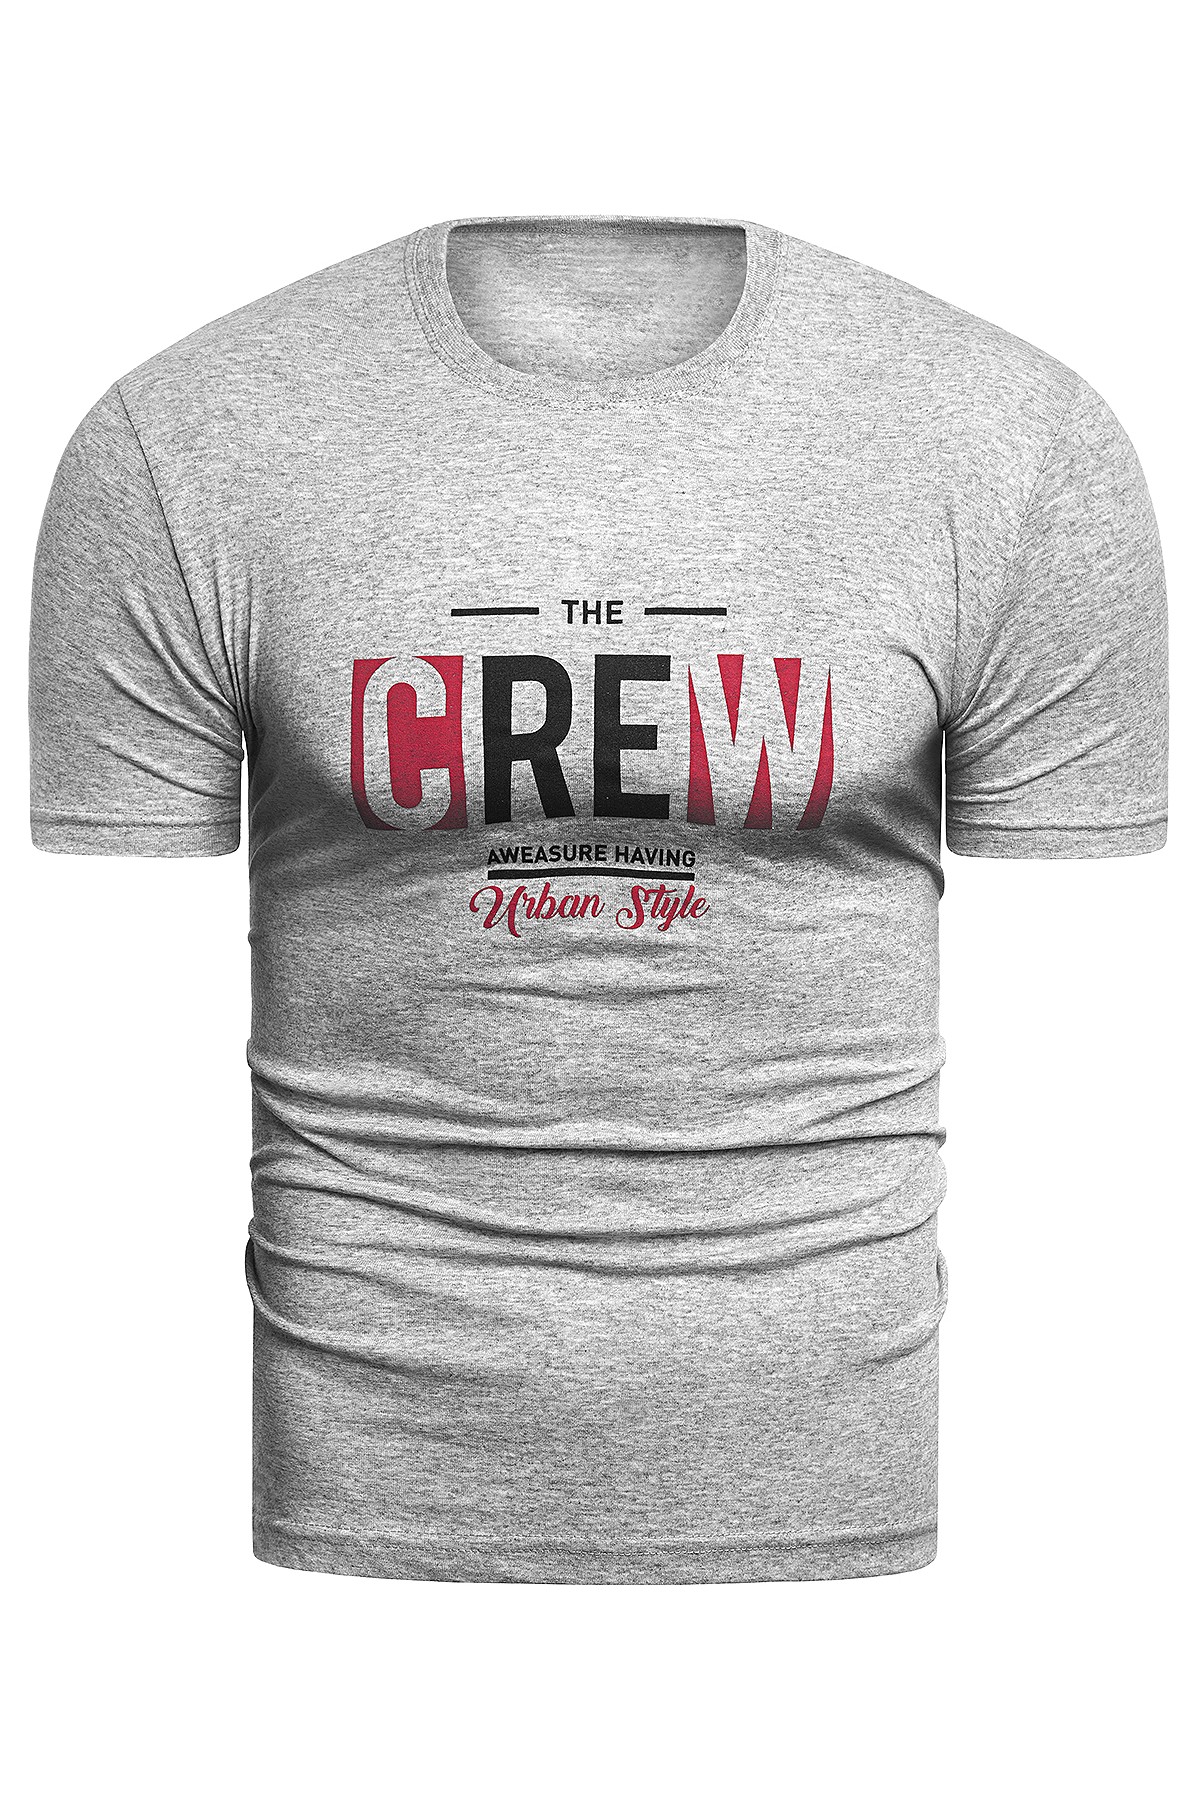 Wyprzedaż koszulka t-shirt CREW - szara